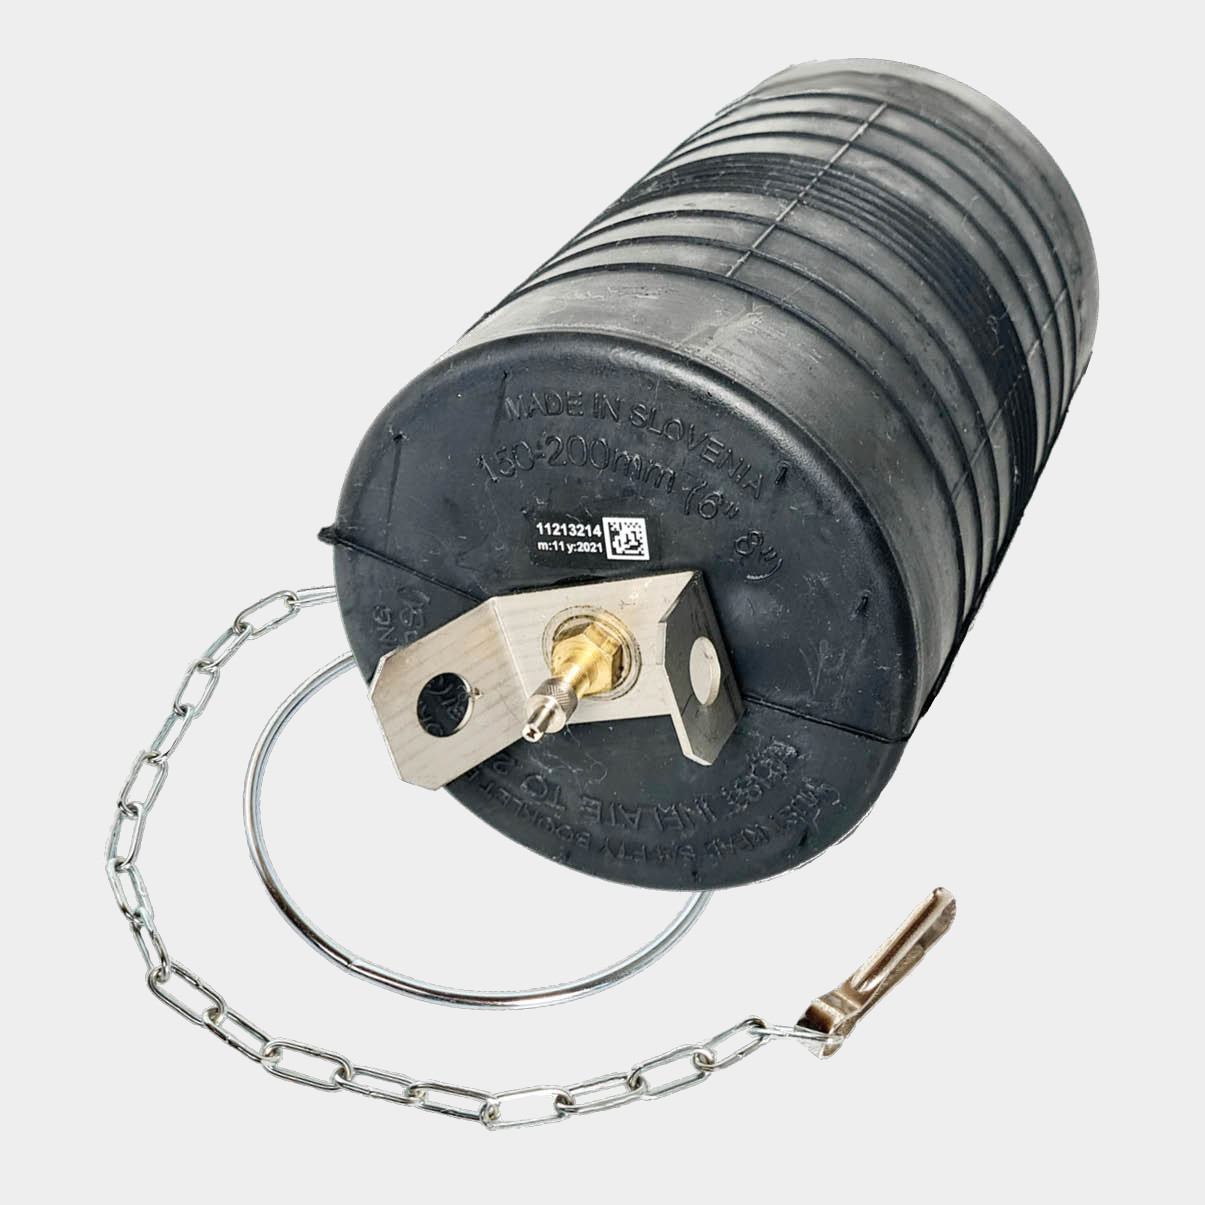 Rohr Absperrblase Plugy Z 6-8_150-200 mm Reifenventil